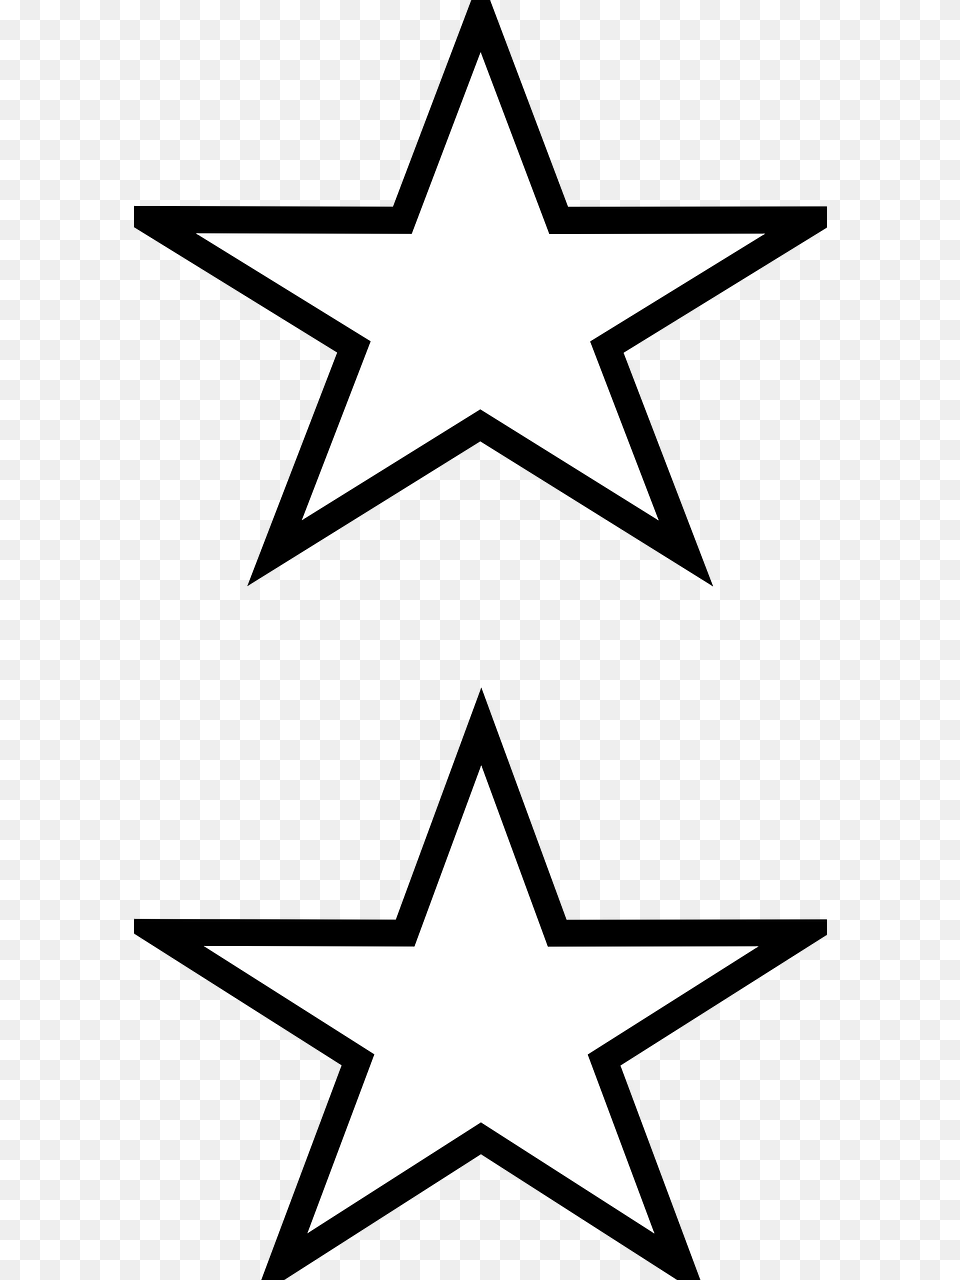 Gambar Bintang Hitam Putih, Star Symbol, Symbol Free Png Download